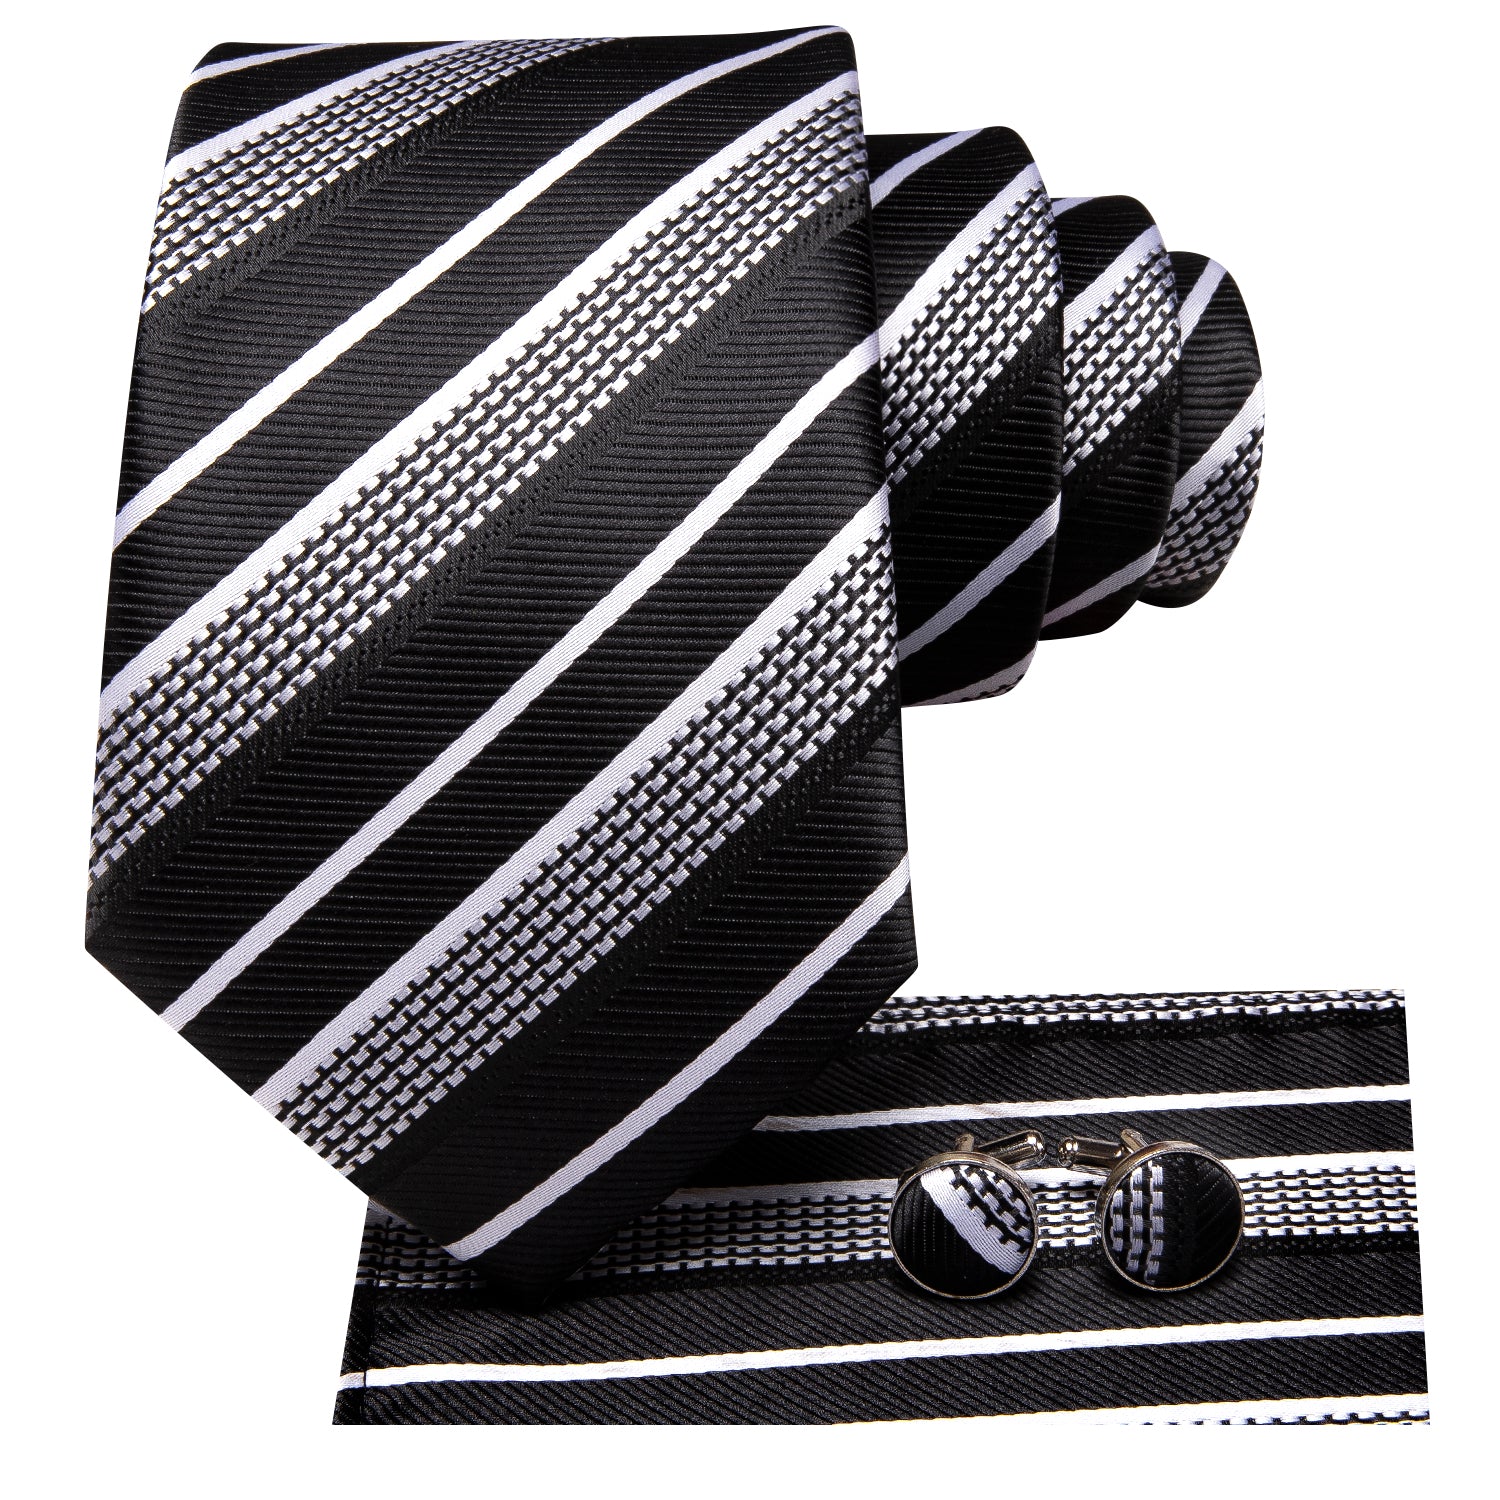 New Black White Strip Necktie Pocket Square Cufflinks Set